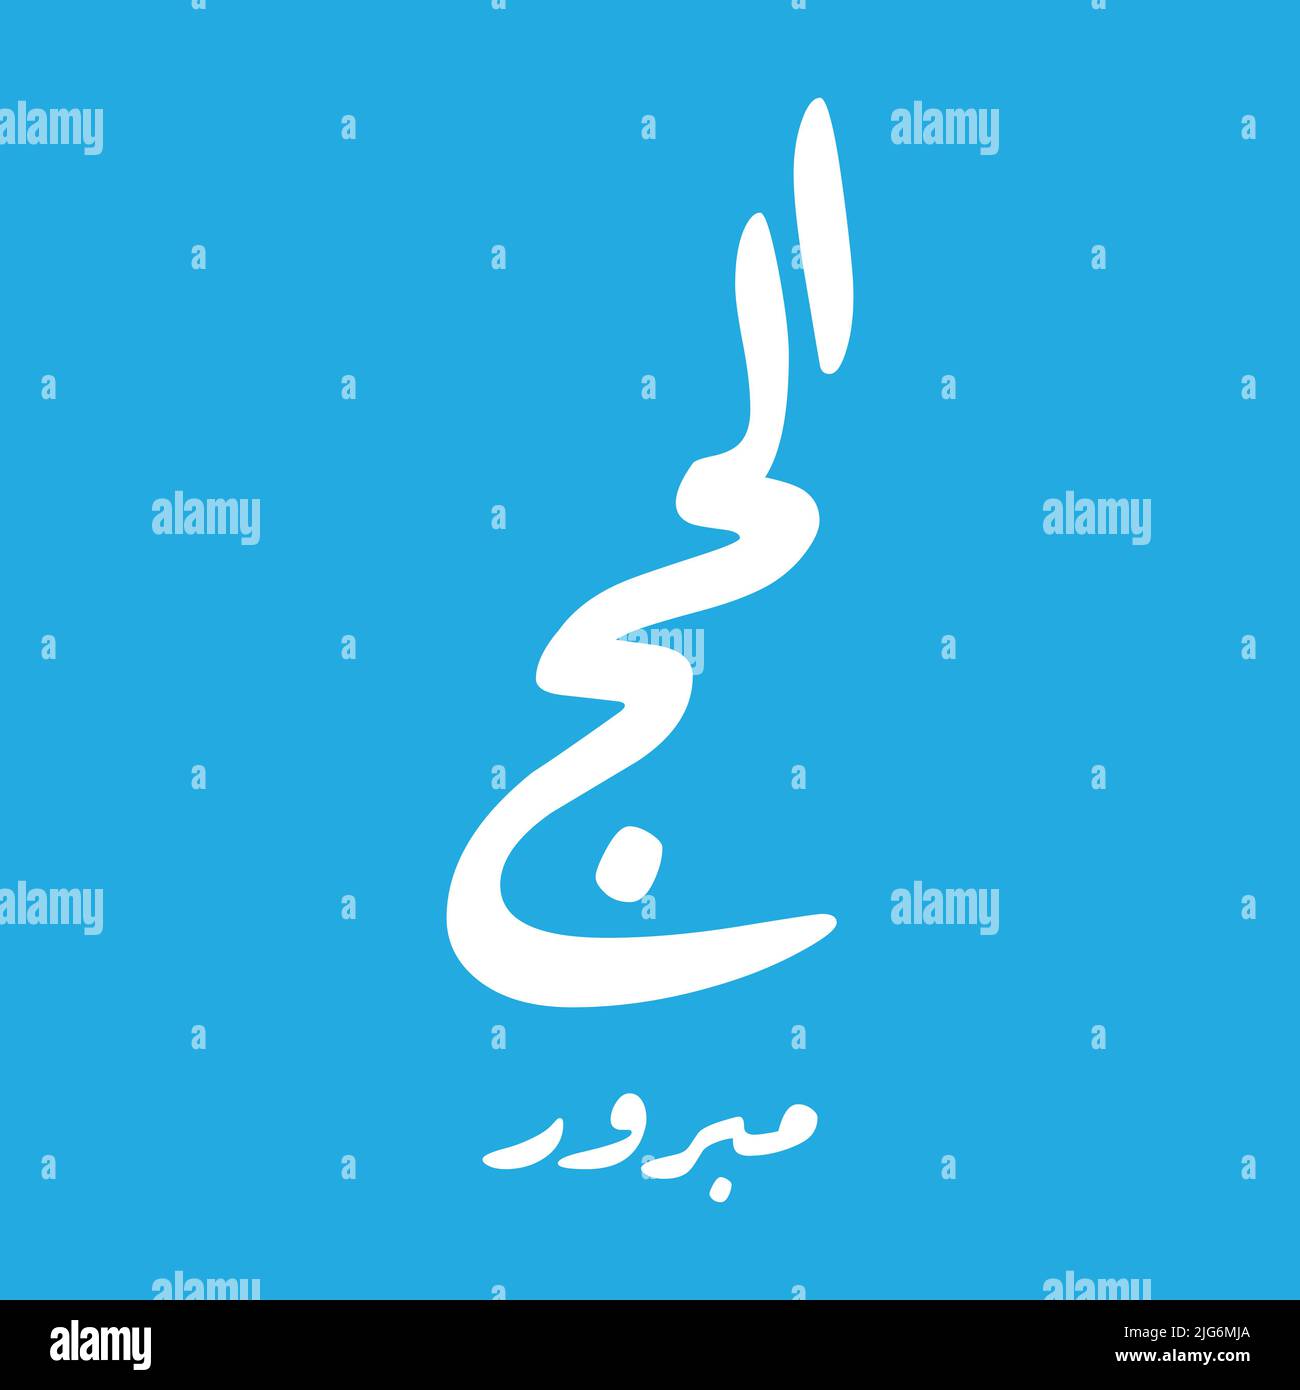 Hajj salutation dans l'art de la calligraphie arabe orthographié comme: Hajj Mabbrour. Et traduit comme: Puisse Allah accepter votre pèlerinage et pardonner vos péchés. Illustration de Vecteur